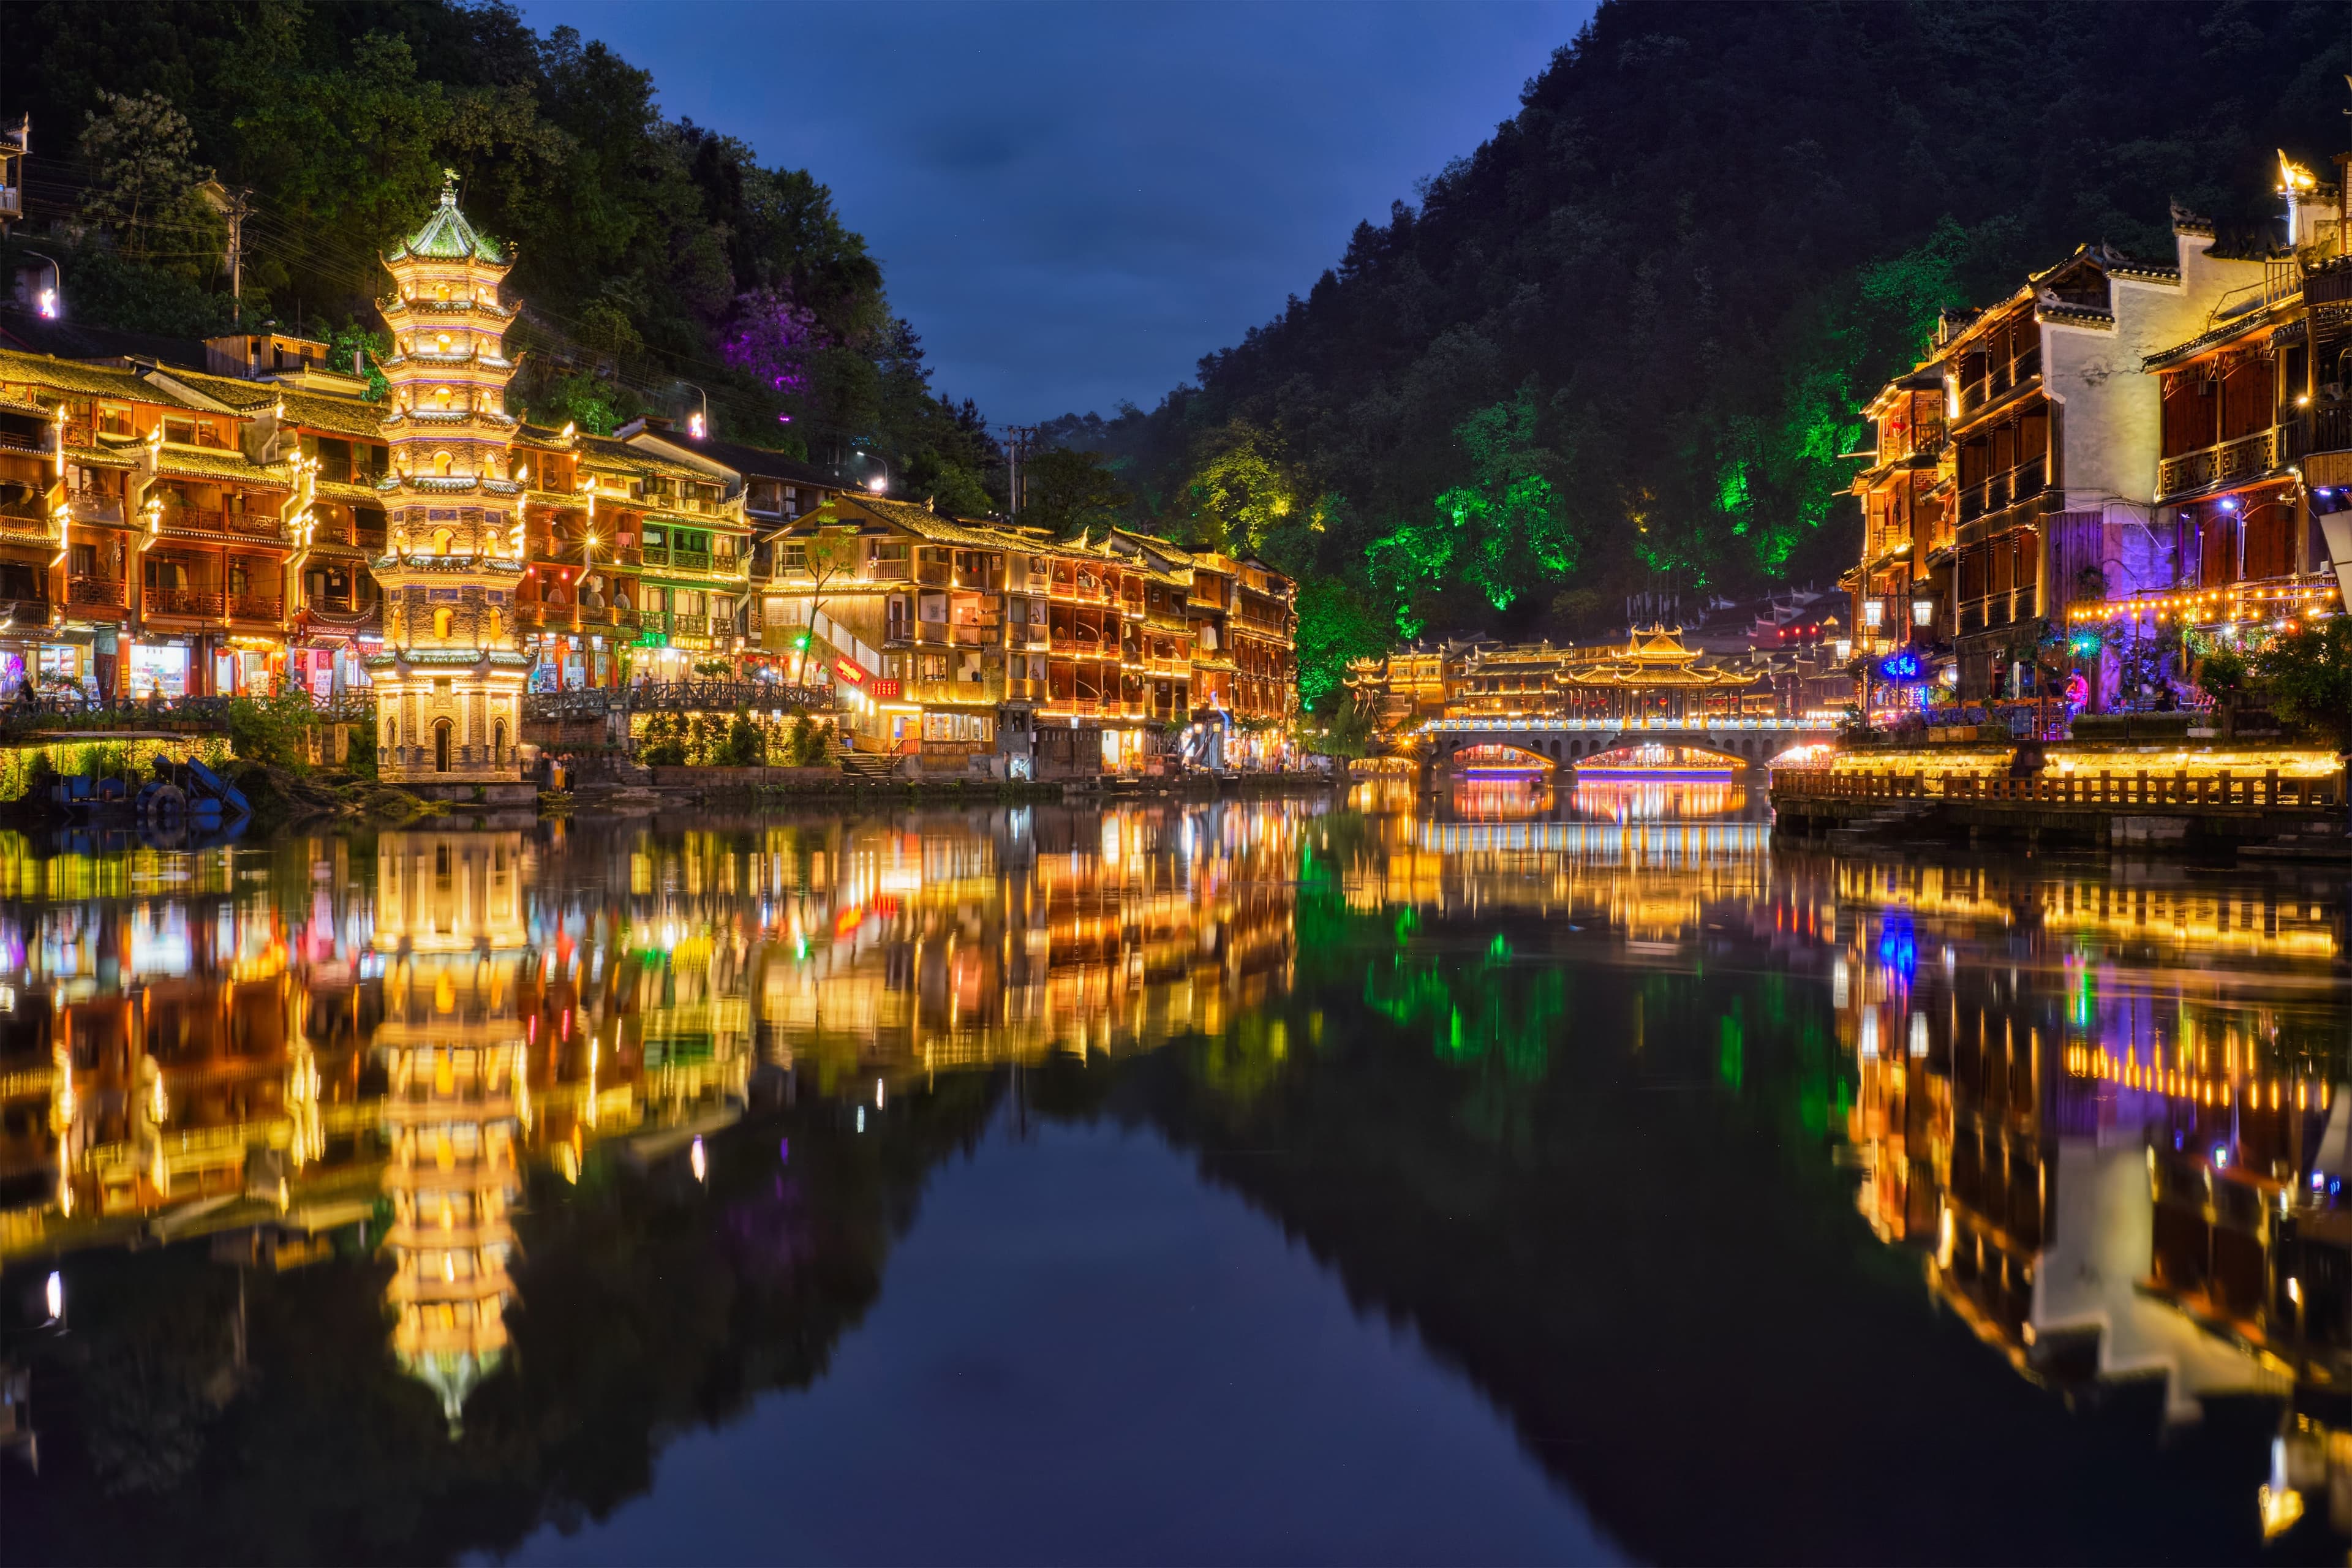 Tour Trung Quốc: Trương Gia Giới - Phượng Hoàng Cổ Trấn 4 ngày 3 đêm từ TP HCM